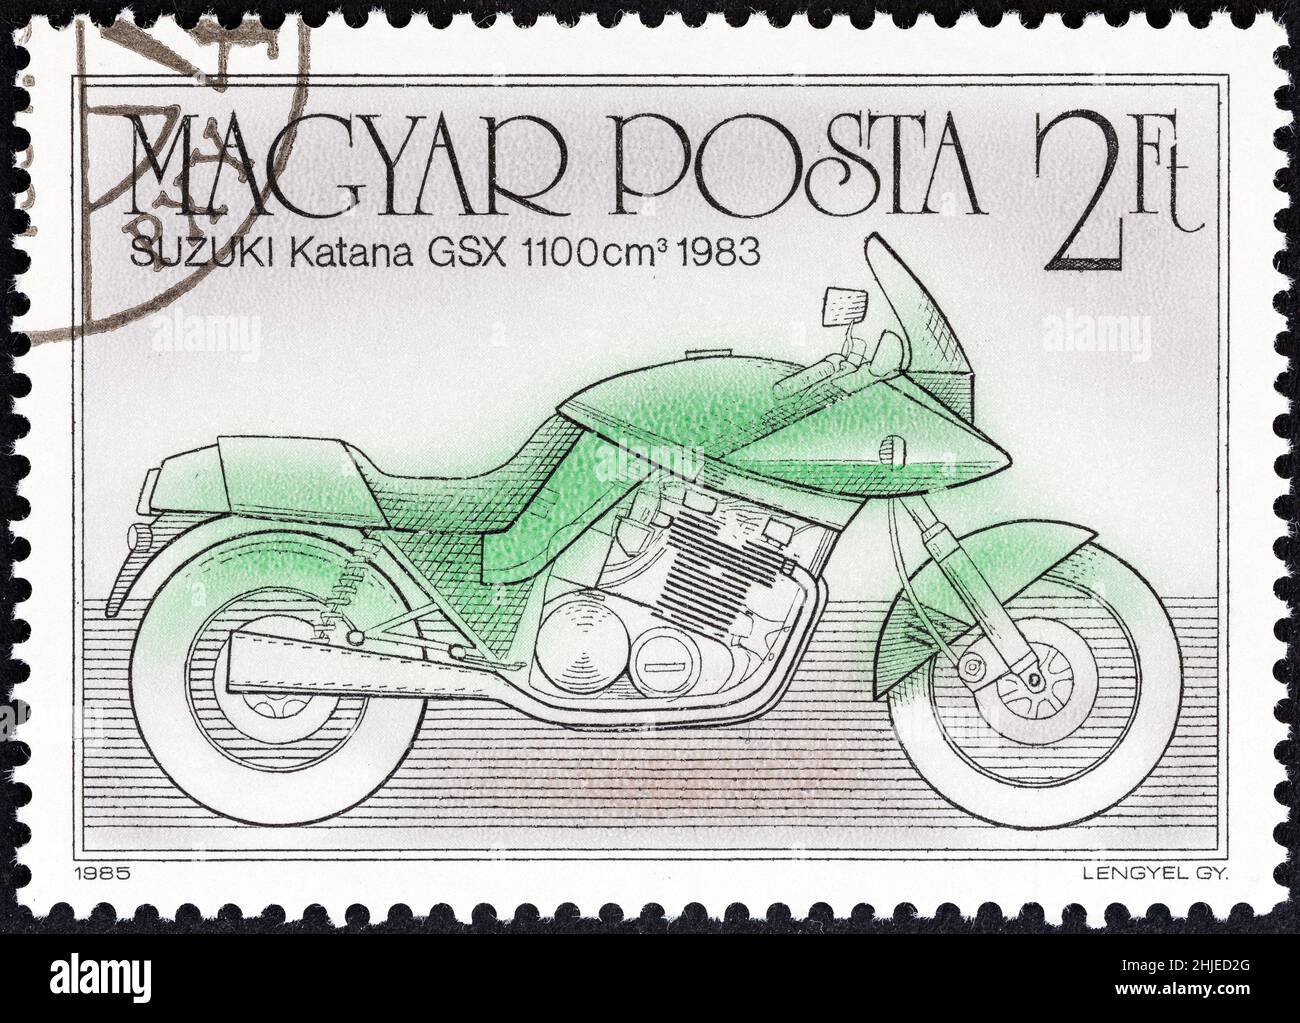 UNGHERIA - CIRCA 1985: Un francobollo stampato in Ungheria dal numero 'Centenario della motocicletta' mostra Suzuki Katana GSX 1100, 1983, circa 1985. Foto Stock